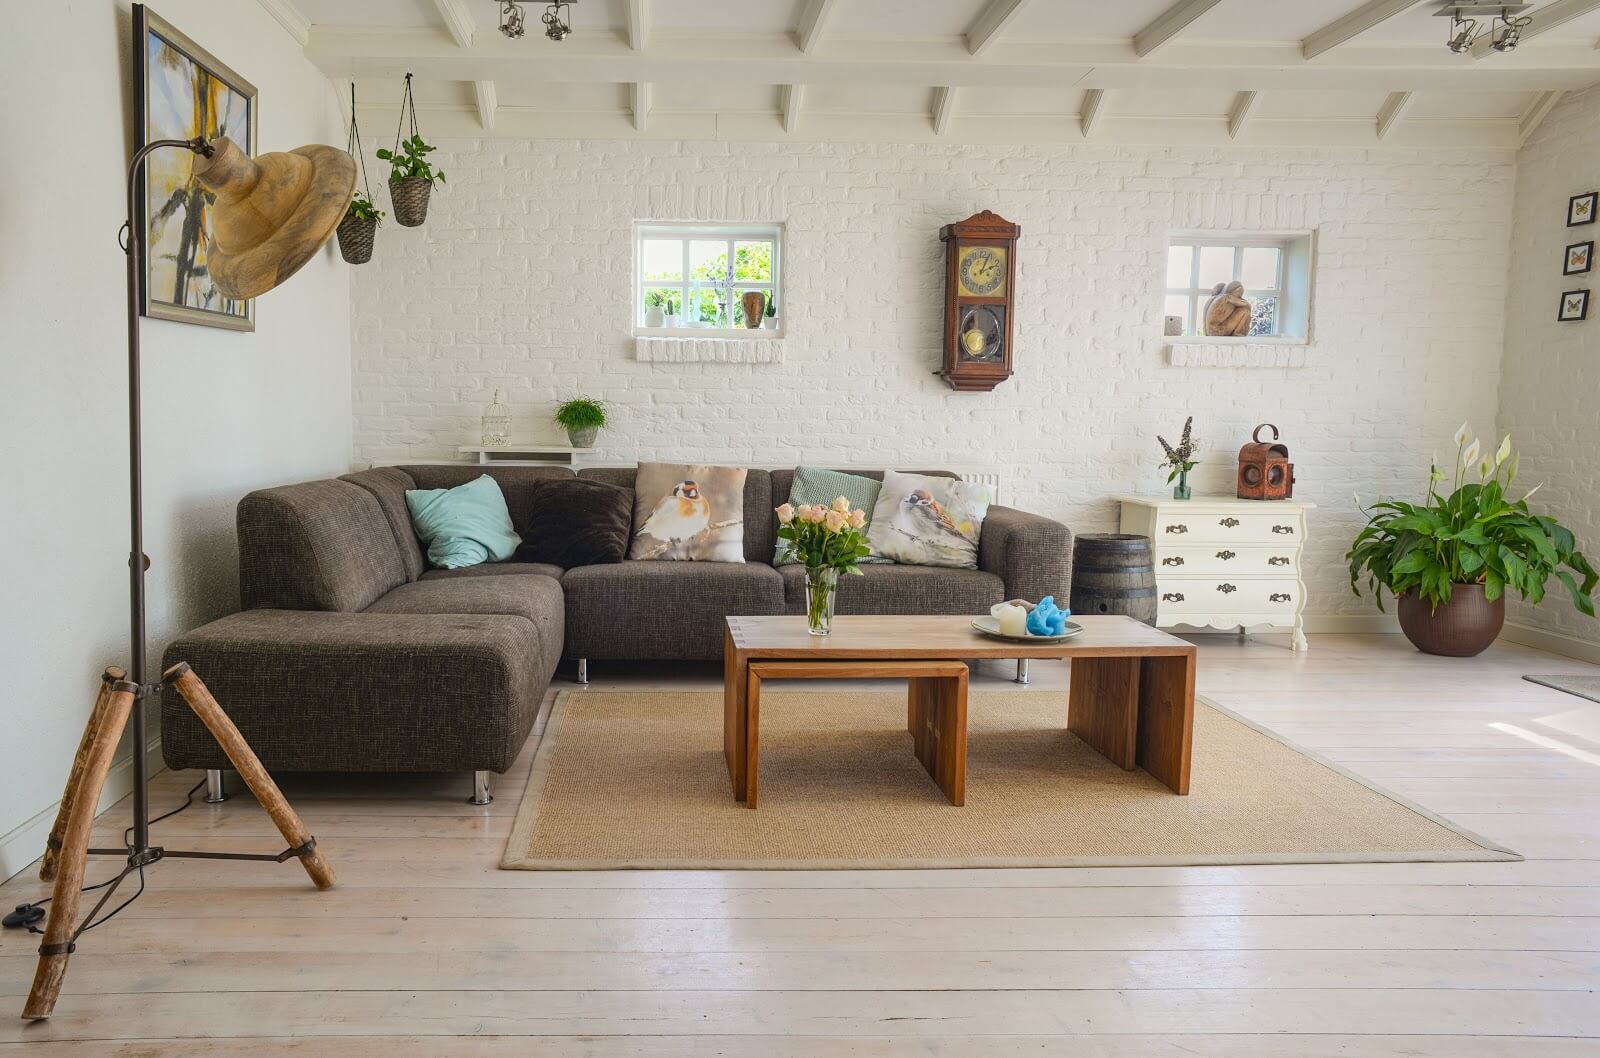 Cómo convertirse en una organizadora profesional de espacios: una sala de estar limpia y minimalista